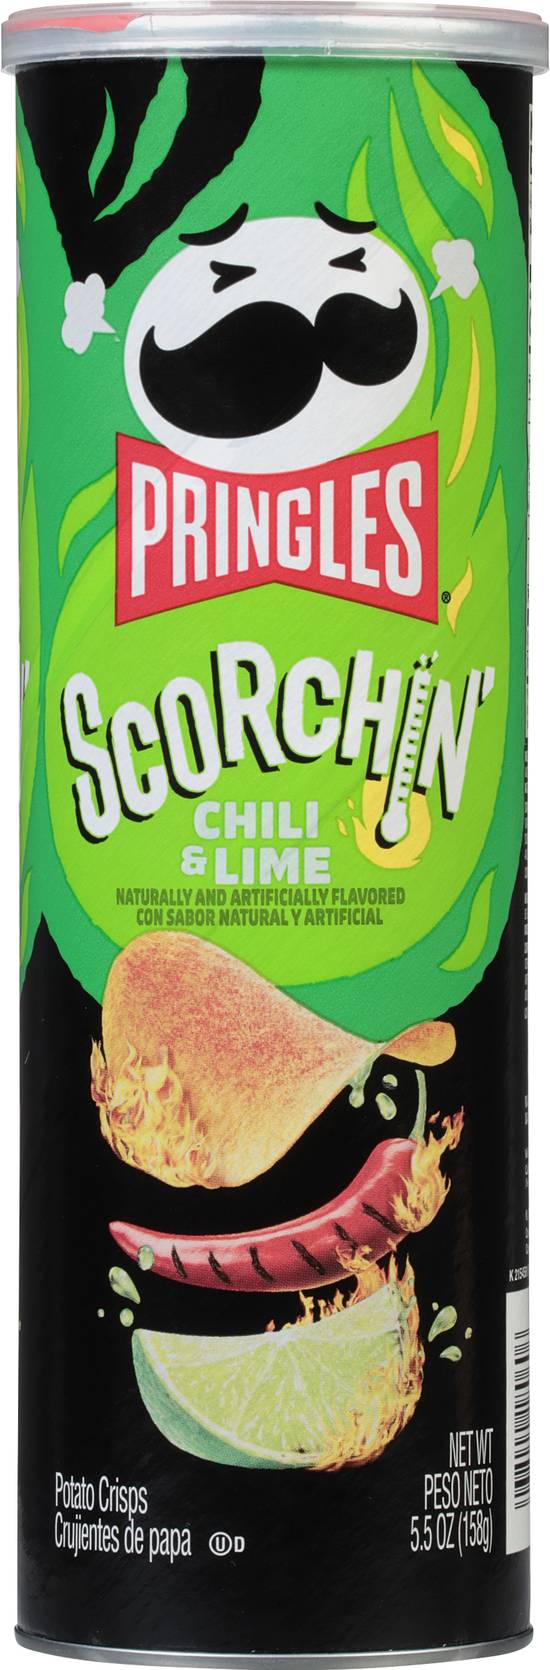 Pringles Scorchin' Chili & Lime Potato Chips